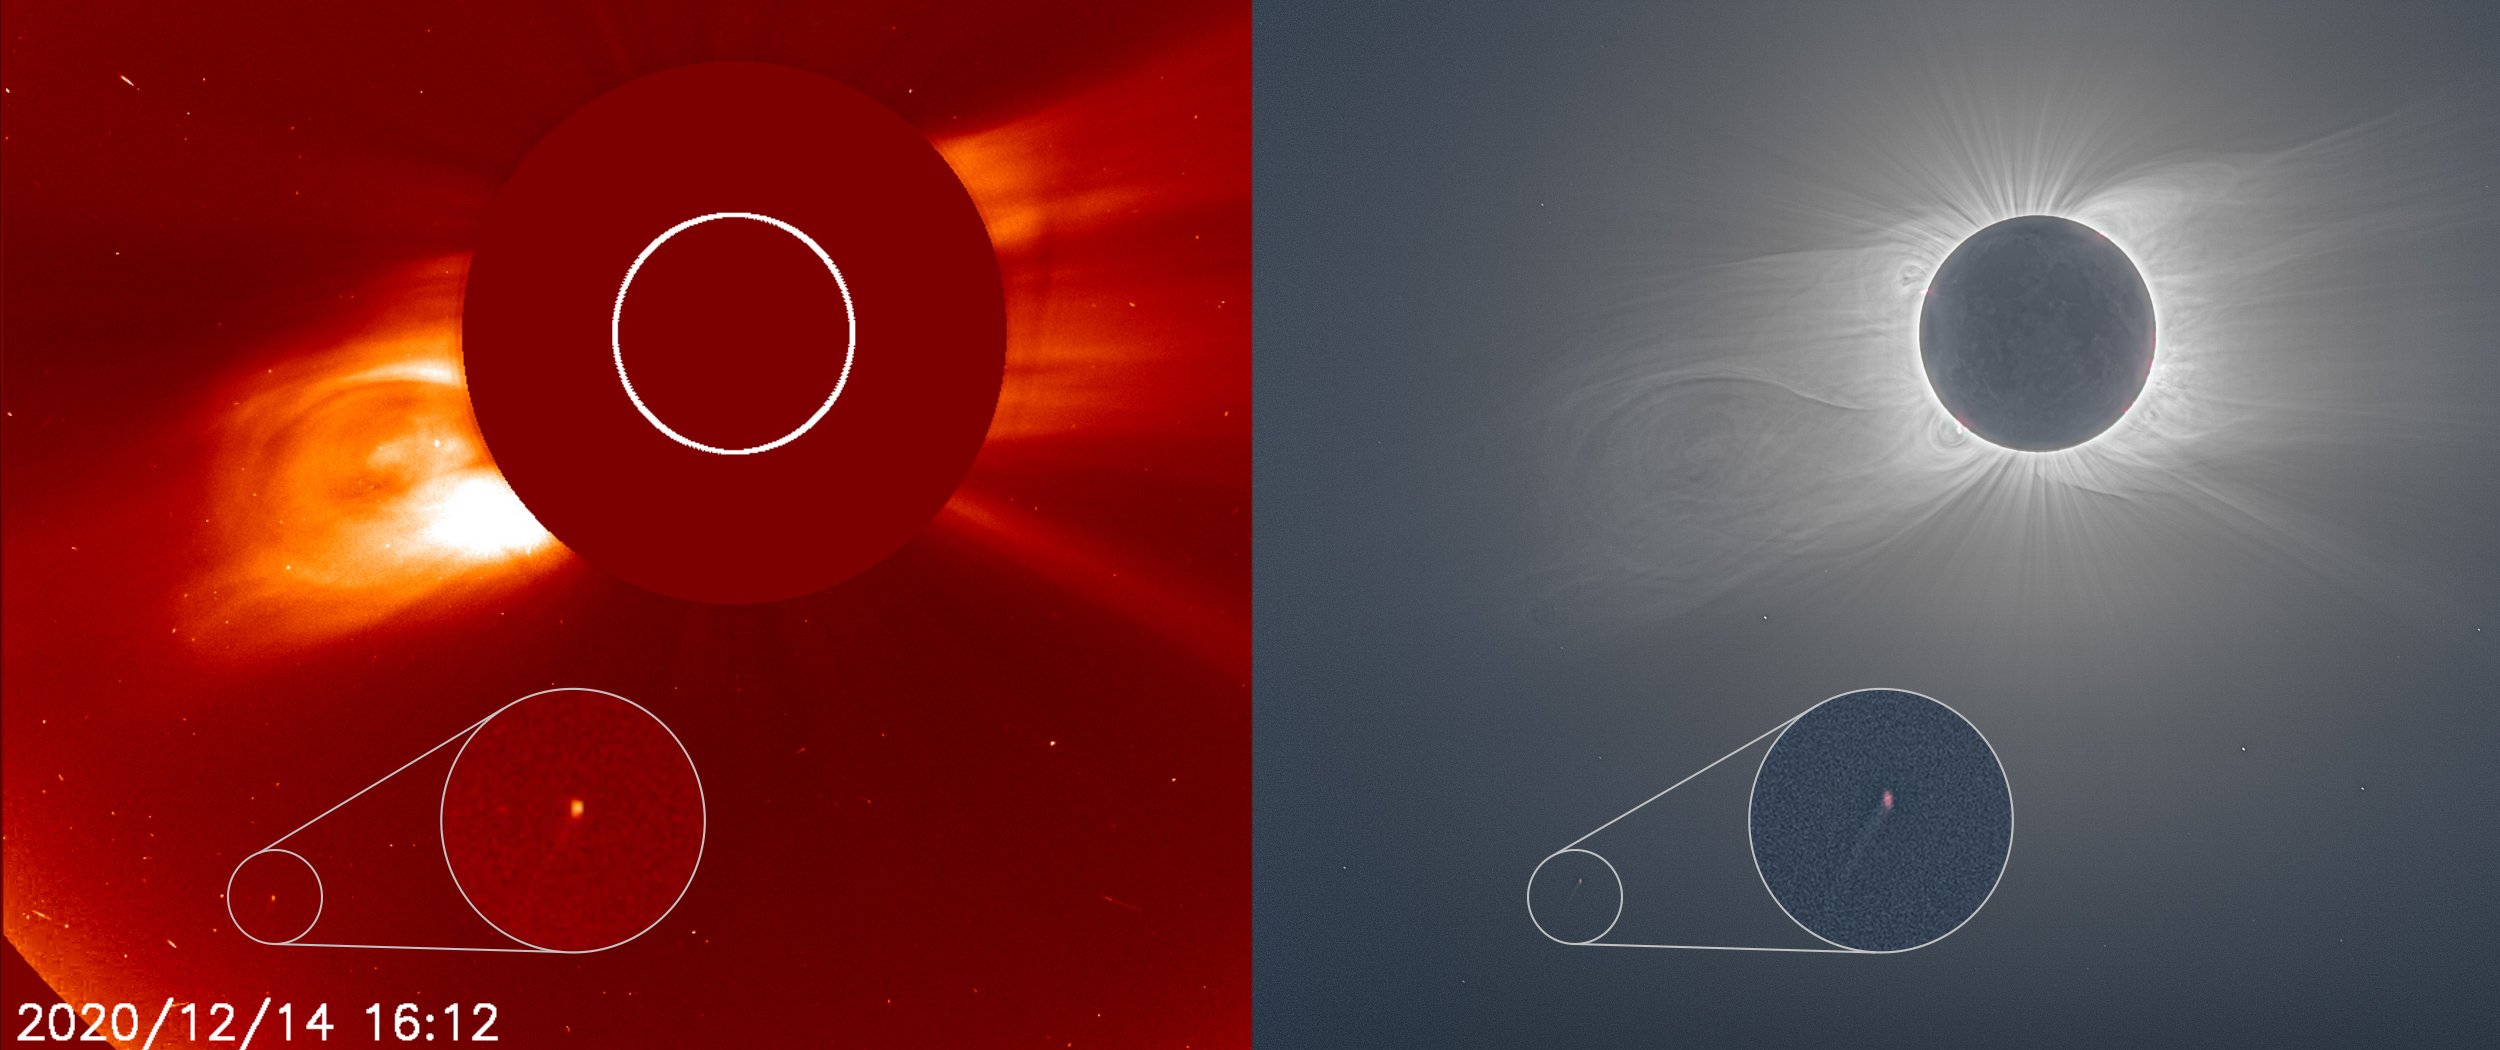 Yan yana iki görüntü Güneş'e yakın bir kuyruklu yıldızı gösteriyor. Sağdaki görüntü ise tam güneş tutulması sırasında Güneş'in parlak bir şekilde parlayan koronasını gösteriyor.